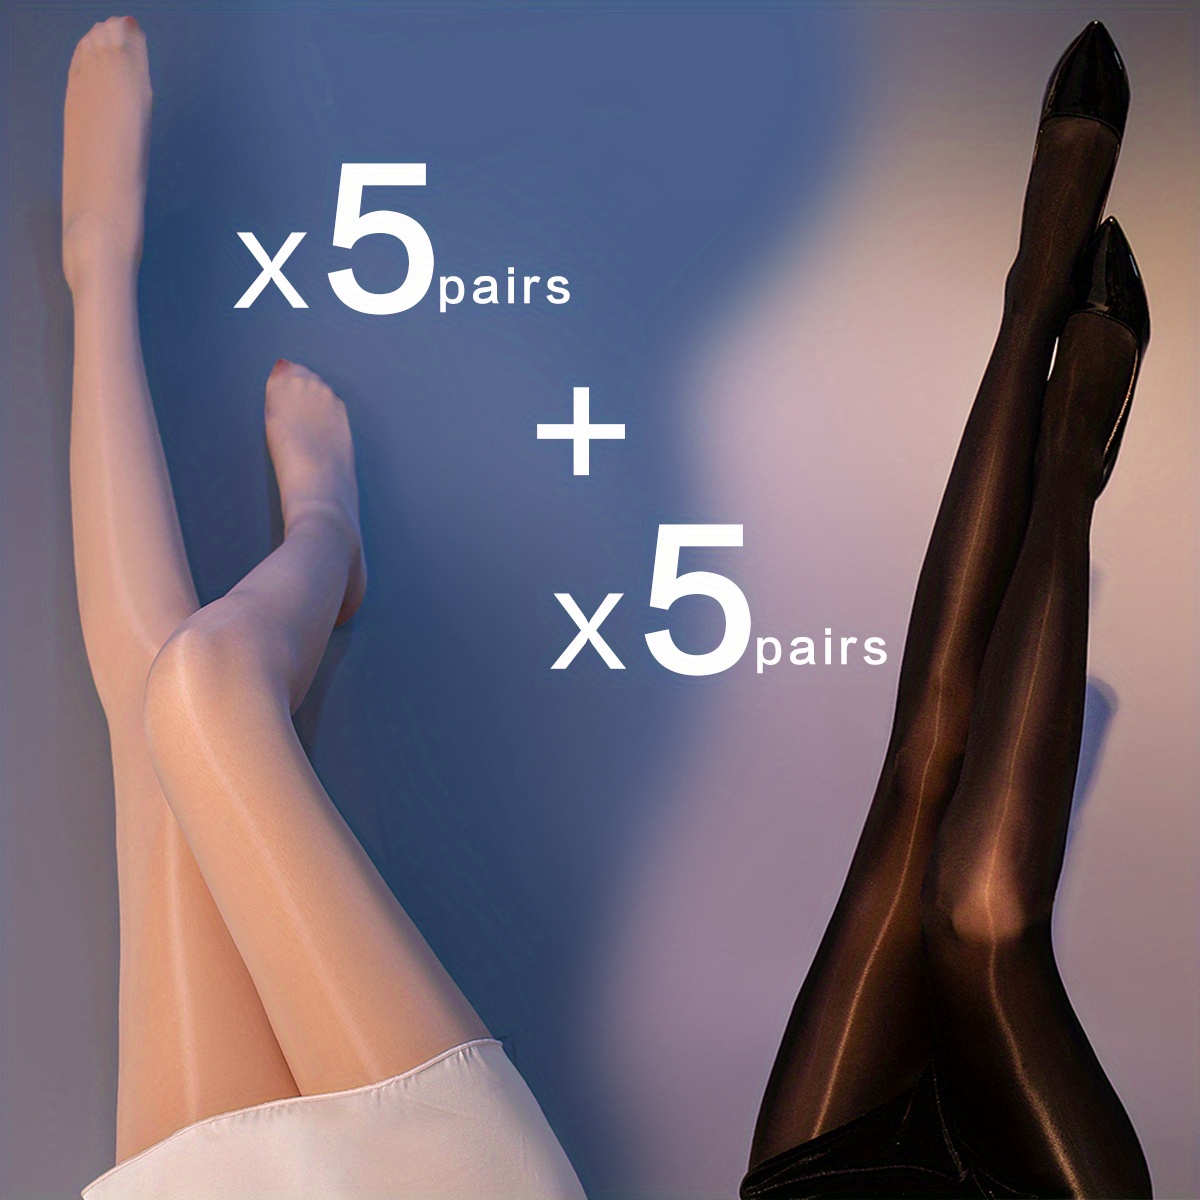 Exclusive 10 Denier Pantyhose, Silky, Attractive Legs - Exclusive